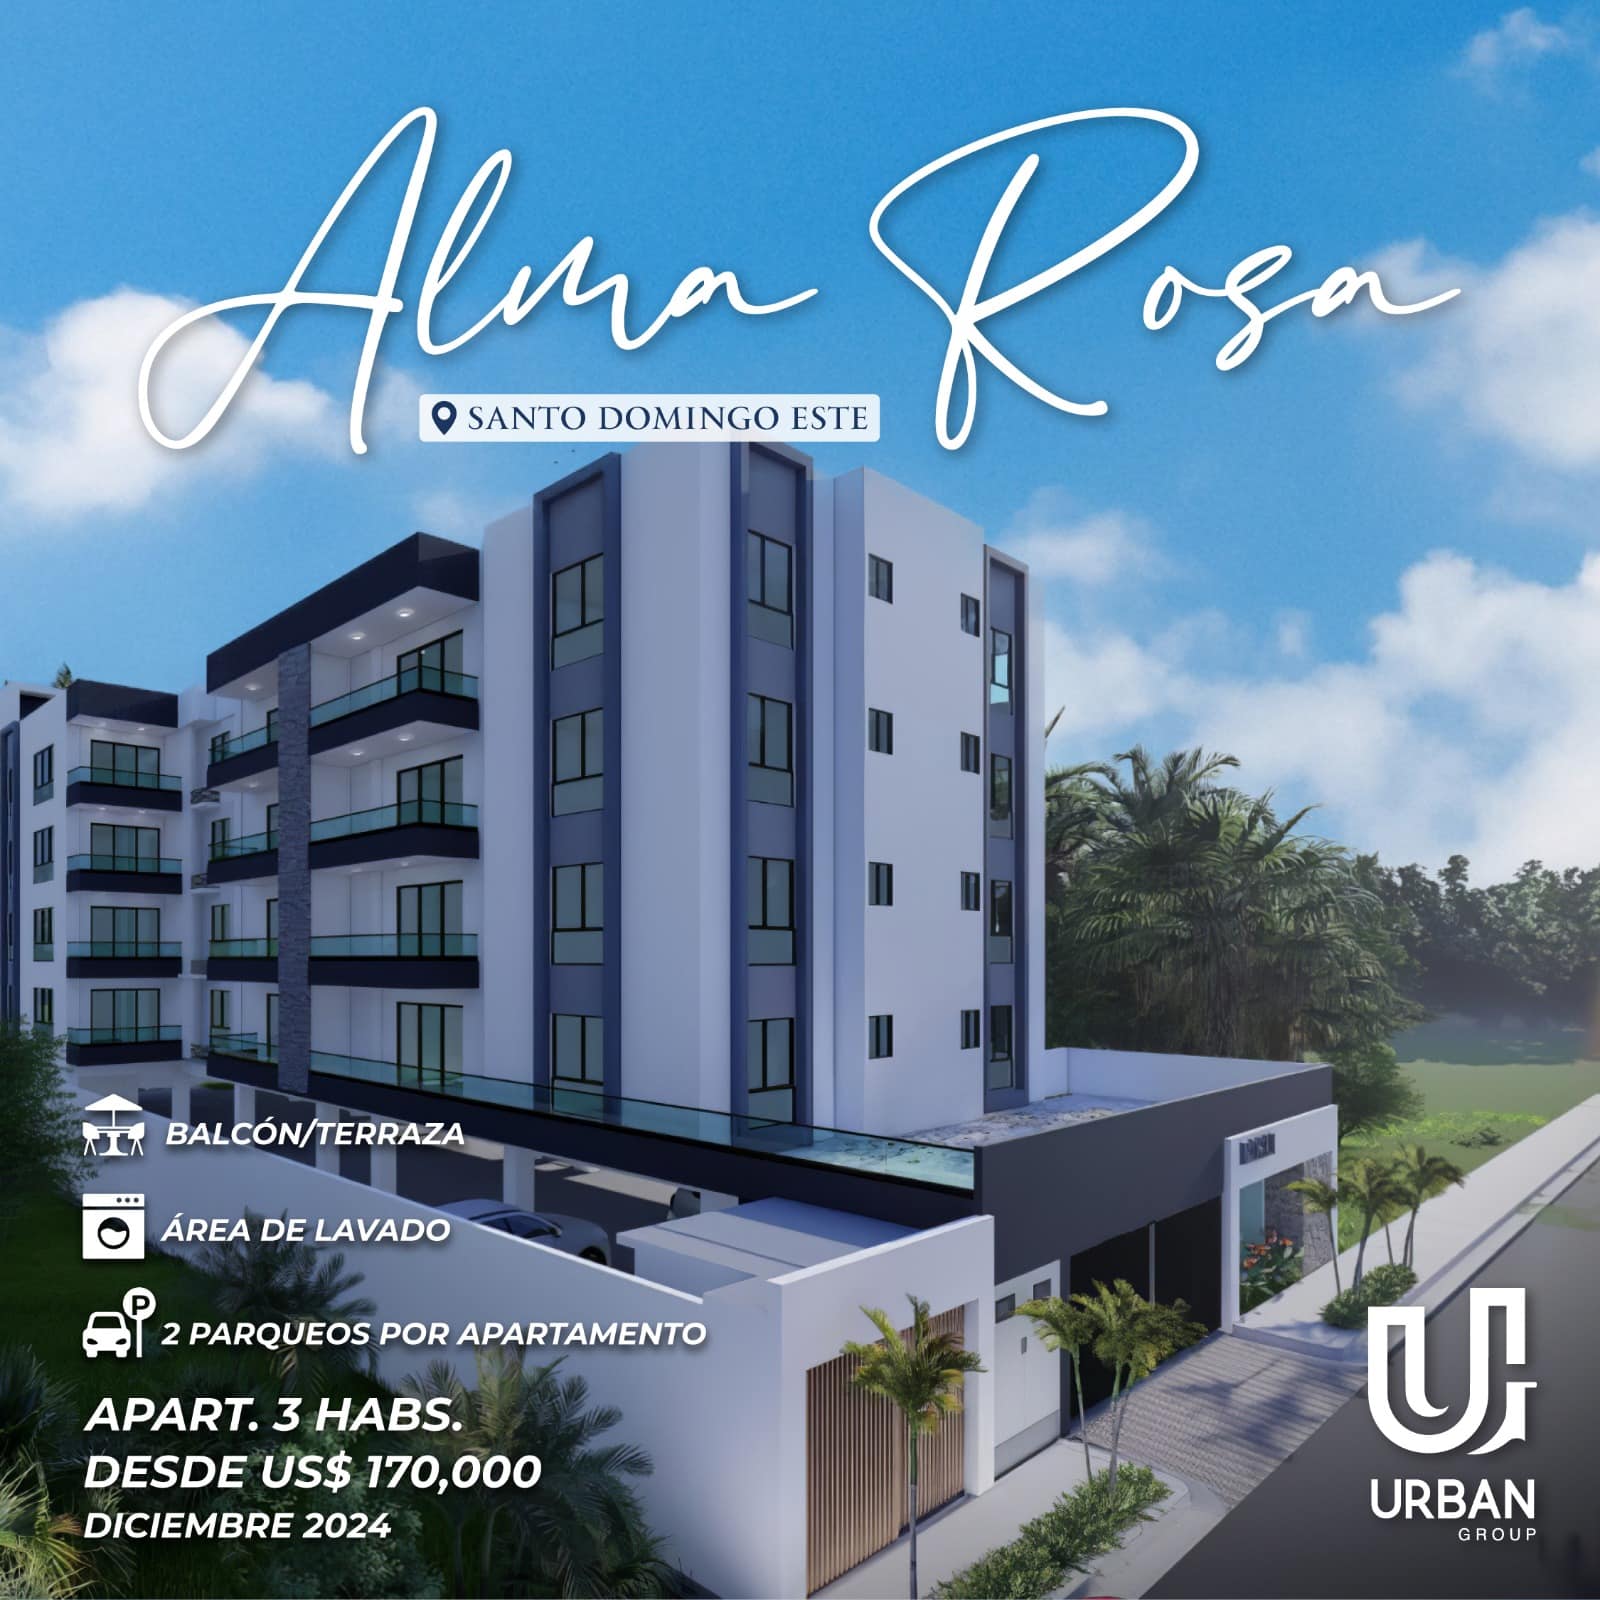 Apartamentos de 3 Habitaciones En Alma Rosa desde US$170,000